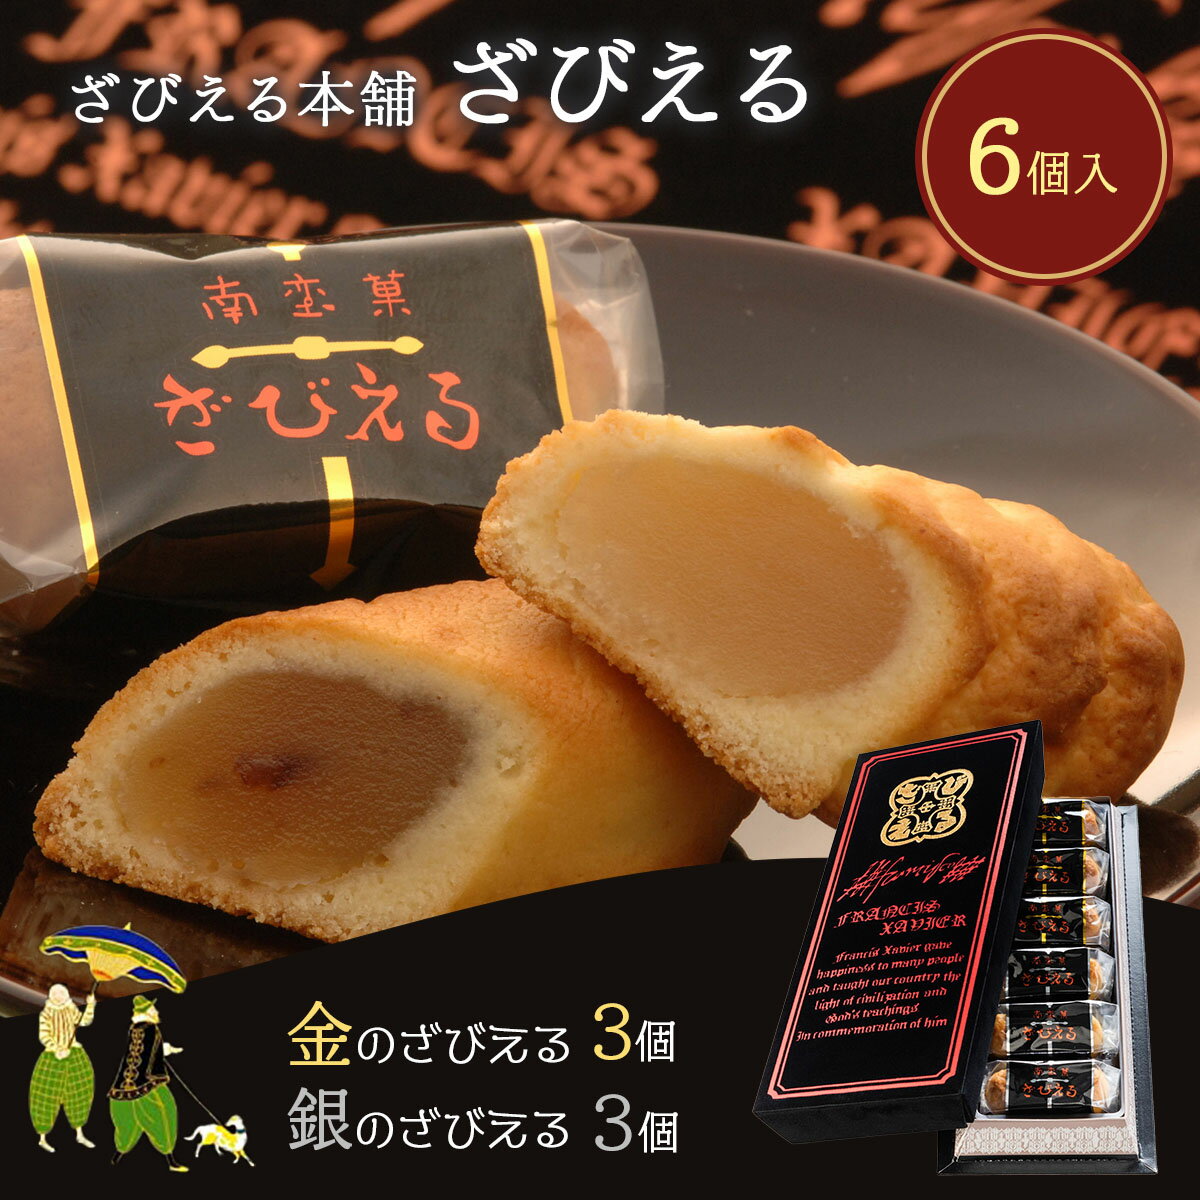 パームクリスプスオーブン焼きオリジナルチーズスナック、1.75オンス Parm Crisps Oven-Baked Original Cheese Snack, 1.75 oz